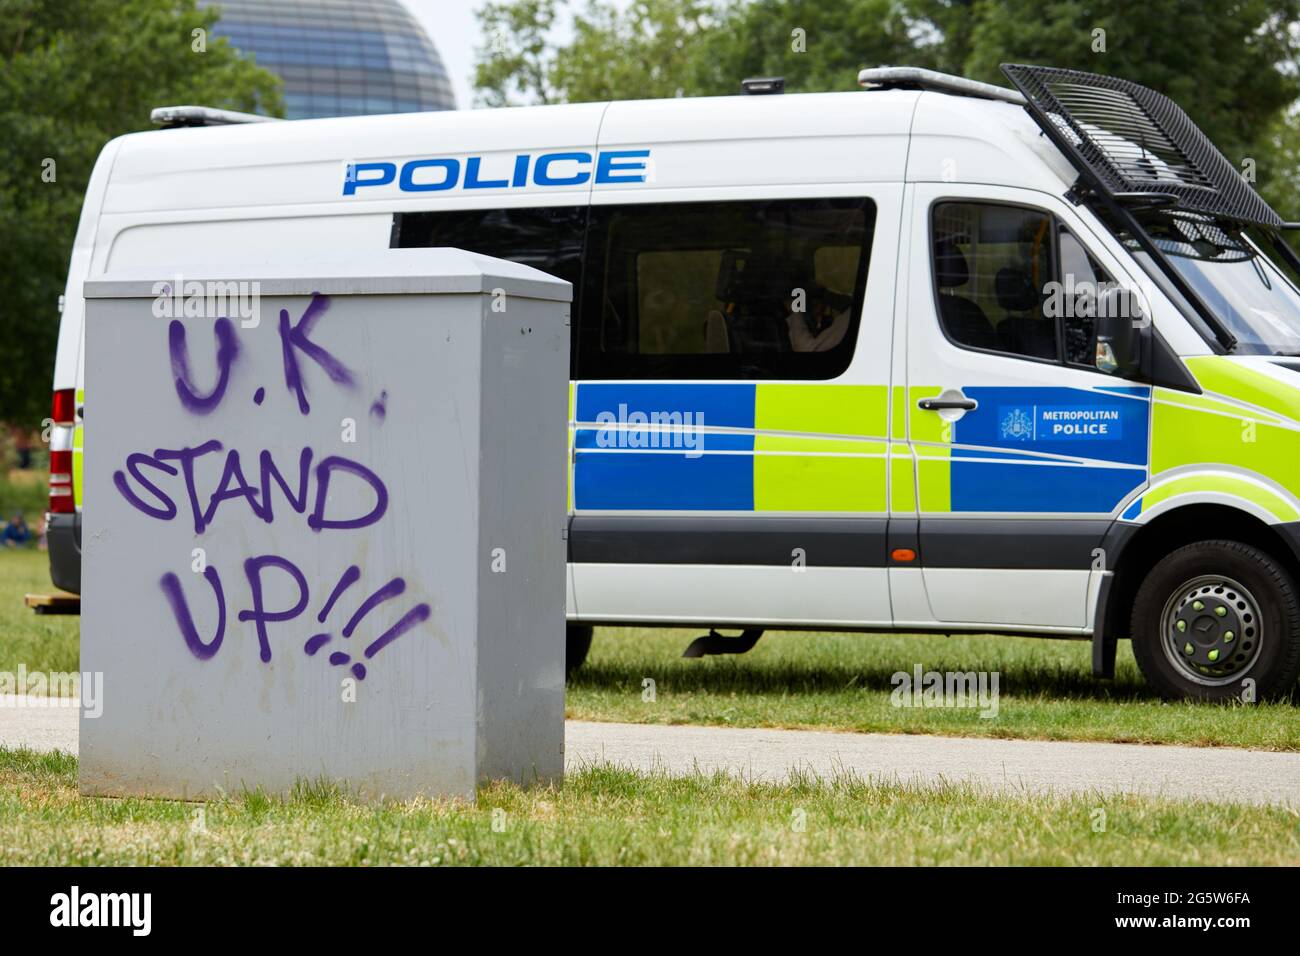 Londres, Reino Unido - 15 de junio de 2021: Graffiti anti-encierro mostrado en los muebles de la calle frente a una furgoneta de policía en el campo de protesta de Shepherds Bush. Foto de stock